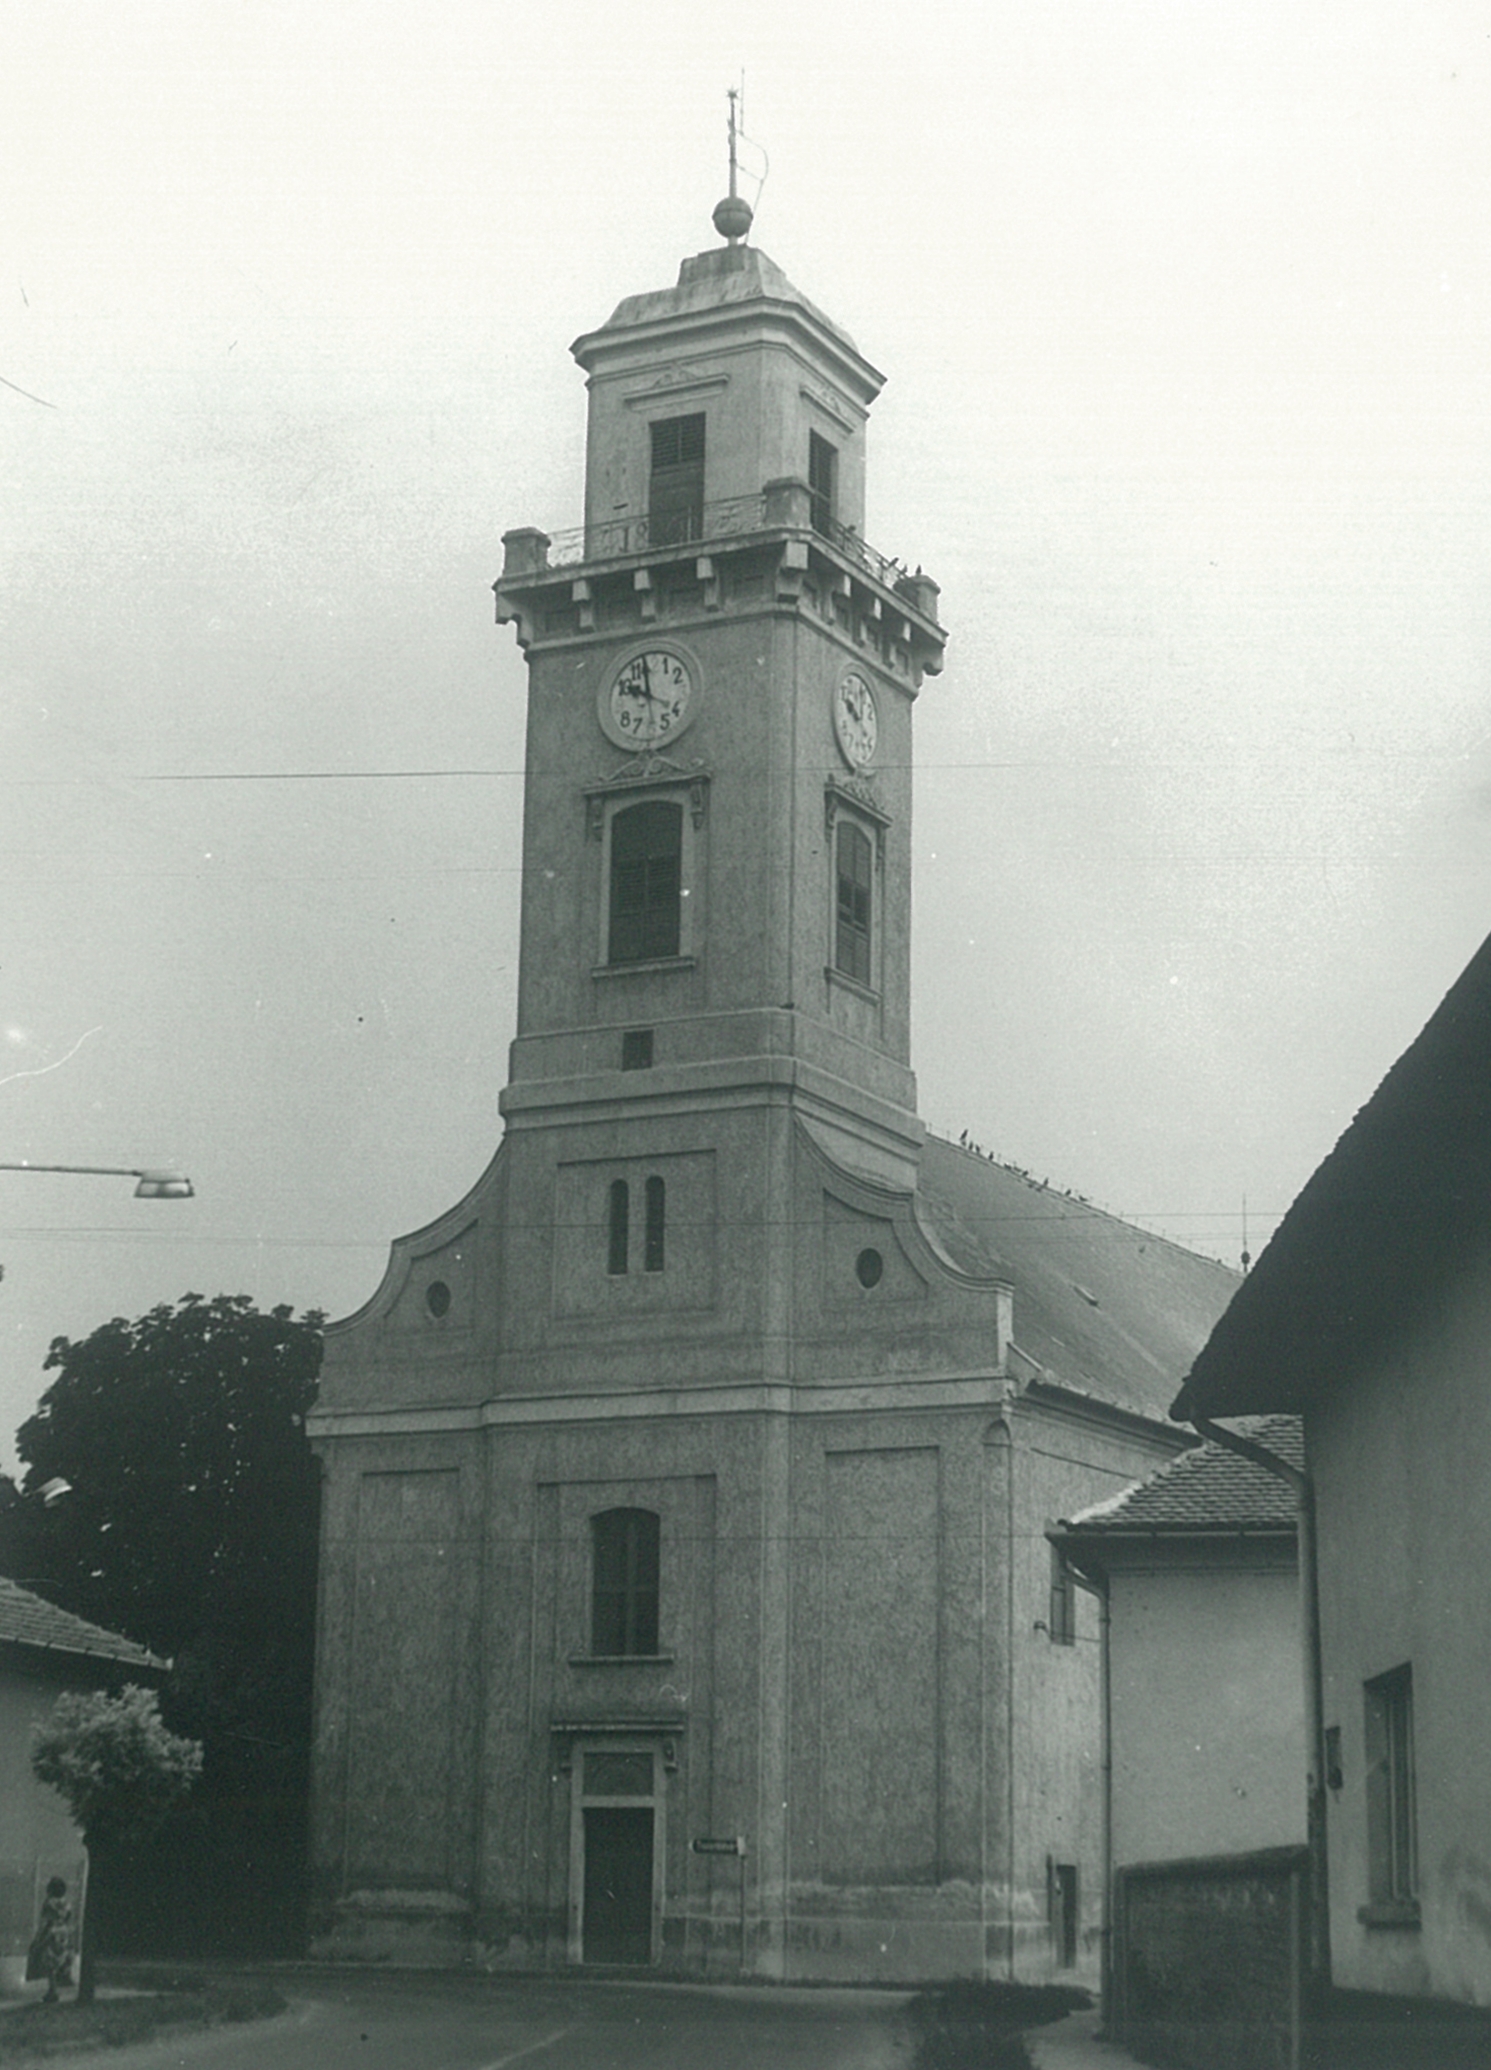 Adalékok az öcsödi református templom építésének történetéhez publikáció képei